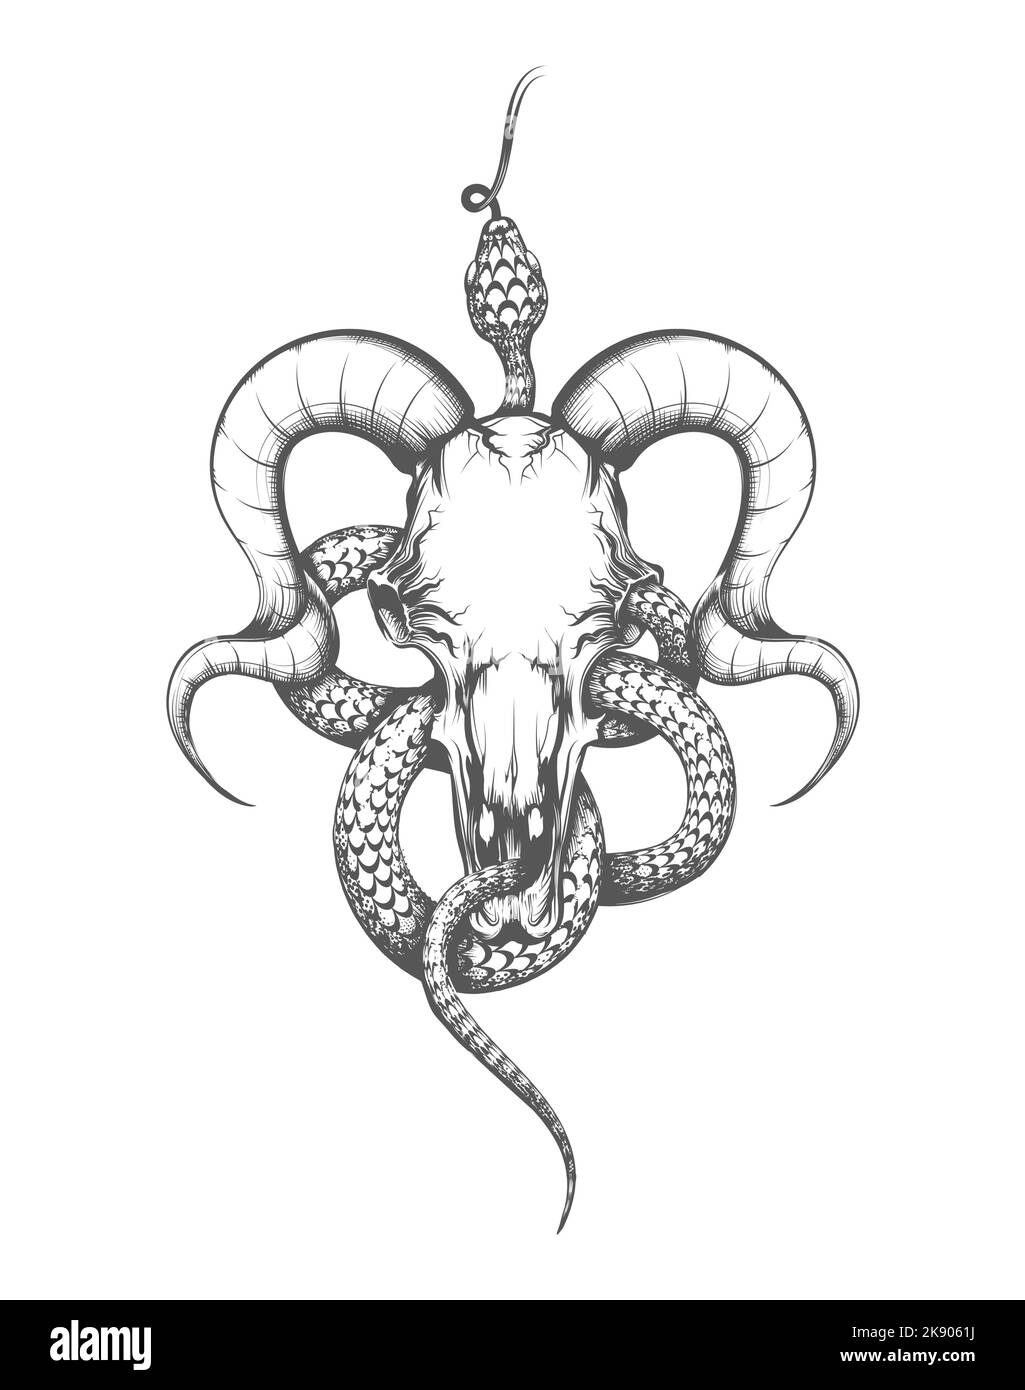 Tatouage du crâne de chèvre et du serpent dessiné en style gravure. Illustration vectorielle isolée sur blanc. Illustration de Vecteur